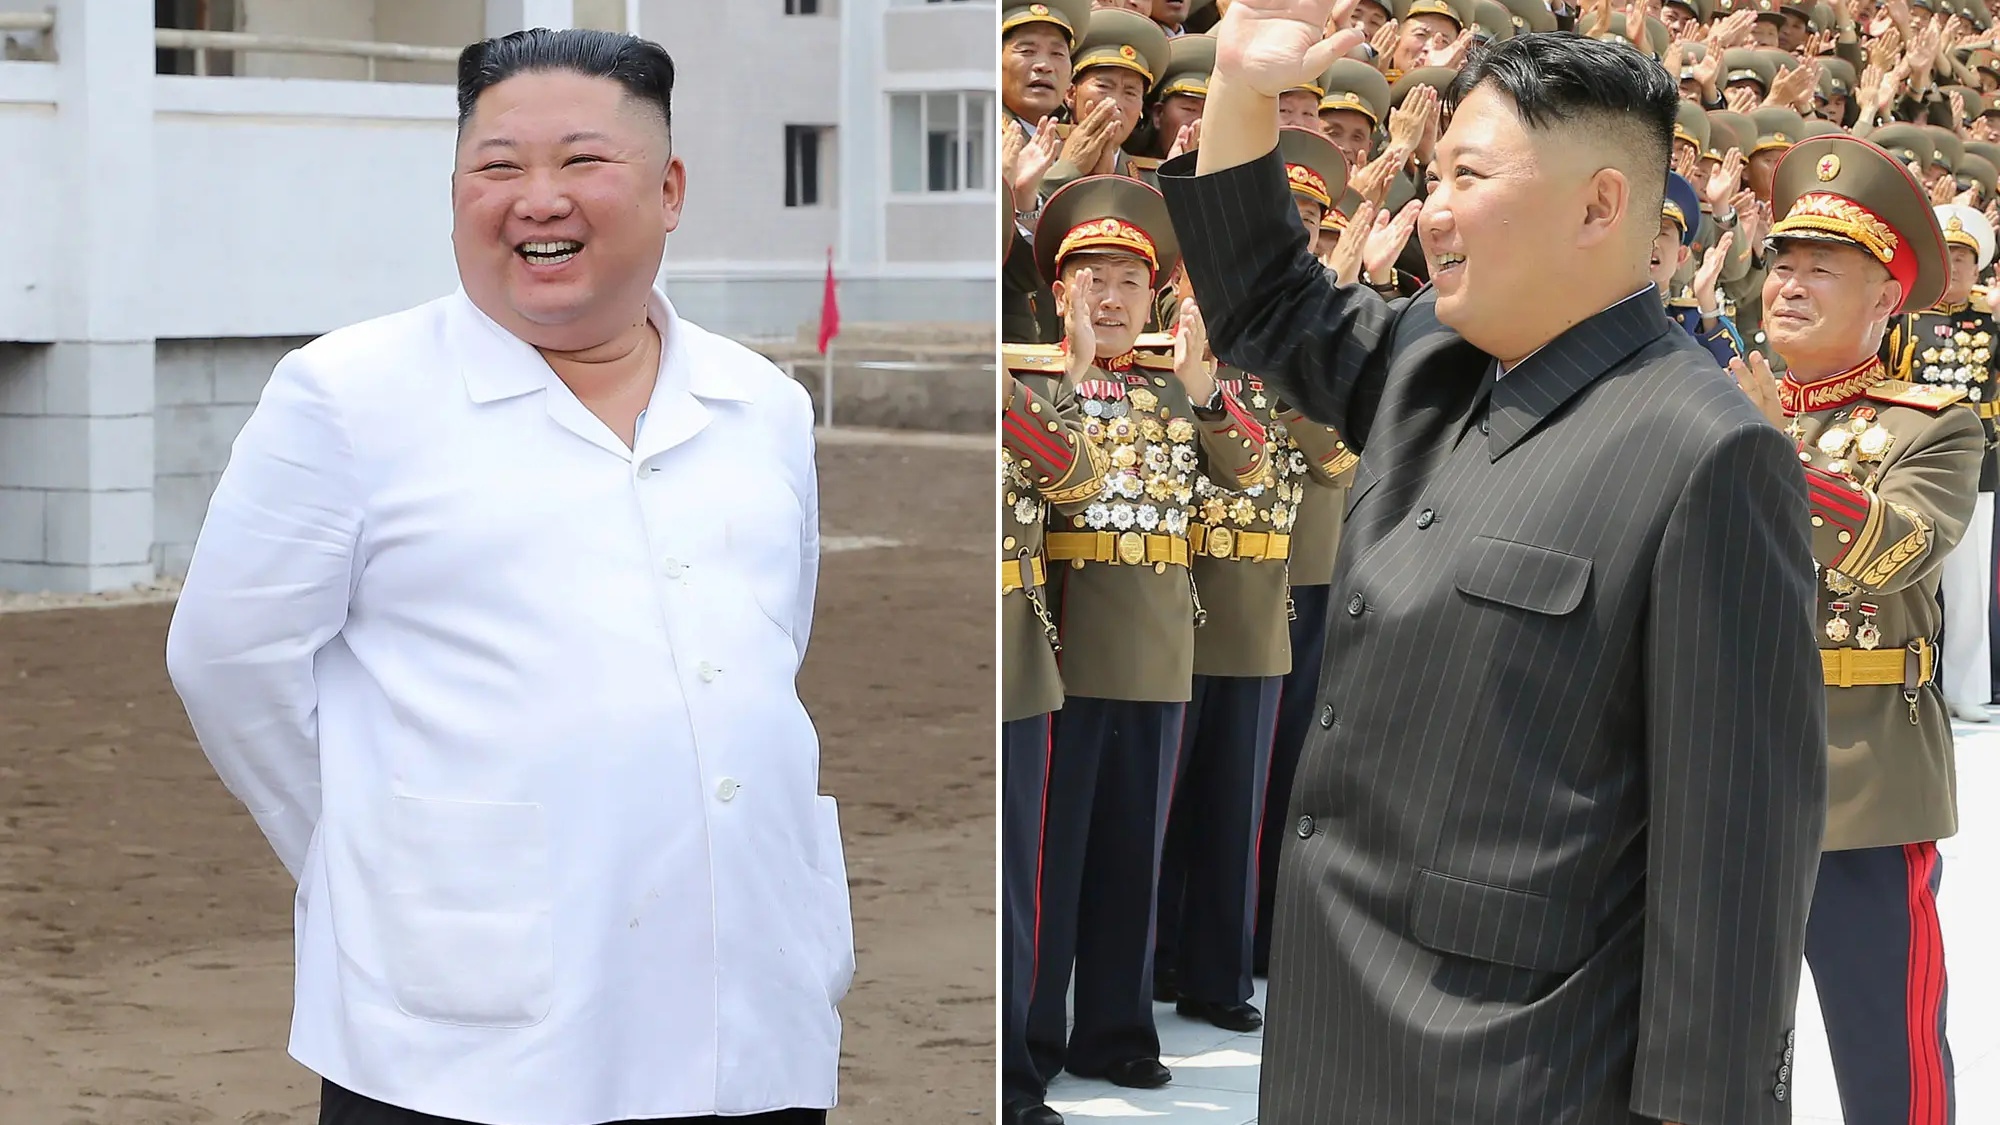 هل فقد زعيم كوريا الشمالية كيم جونغ أون بعضاً من وزنه؟